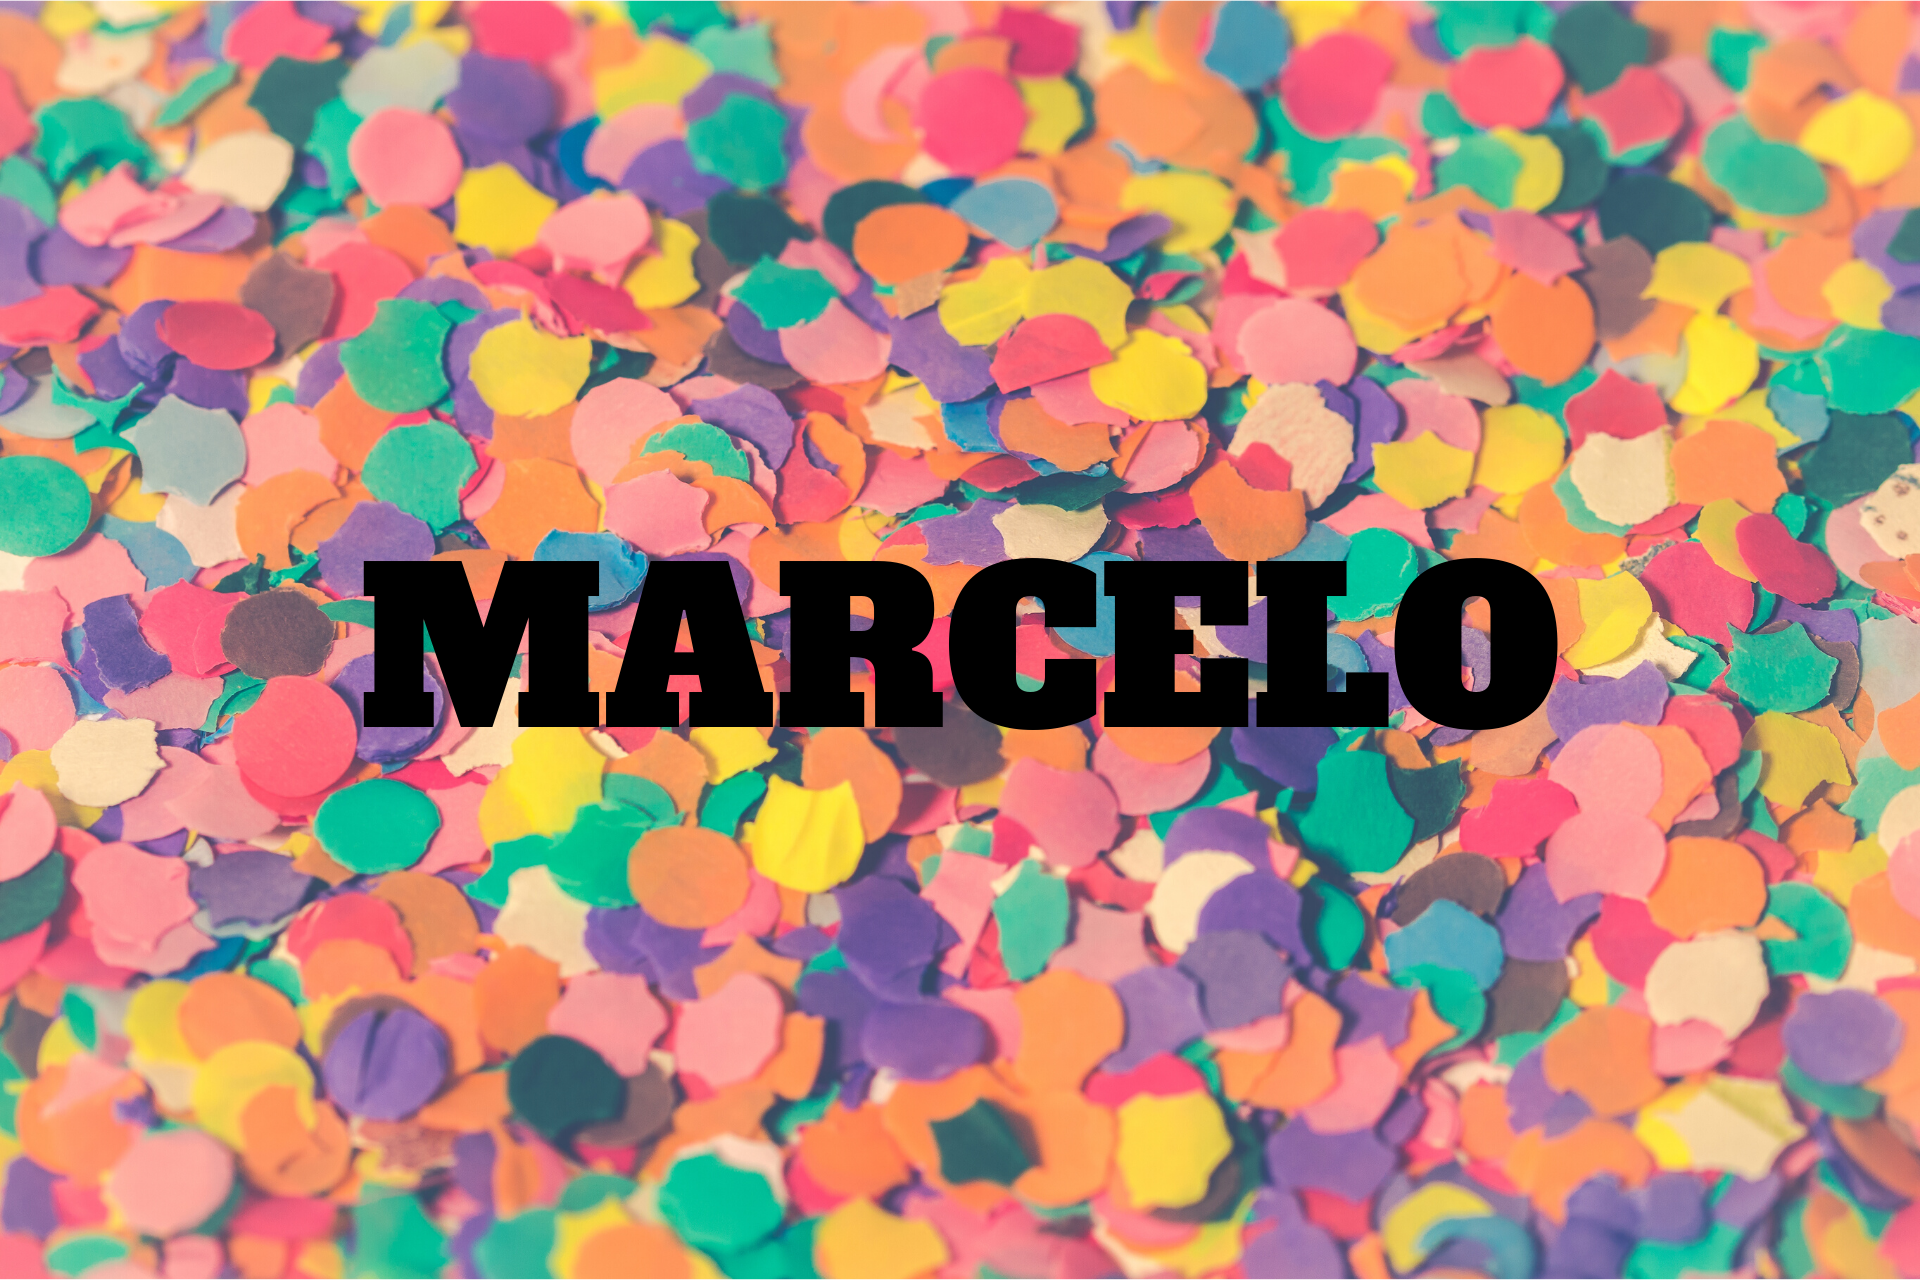  Marcelo význam - původ jména, historie, osobnost a popularita